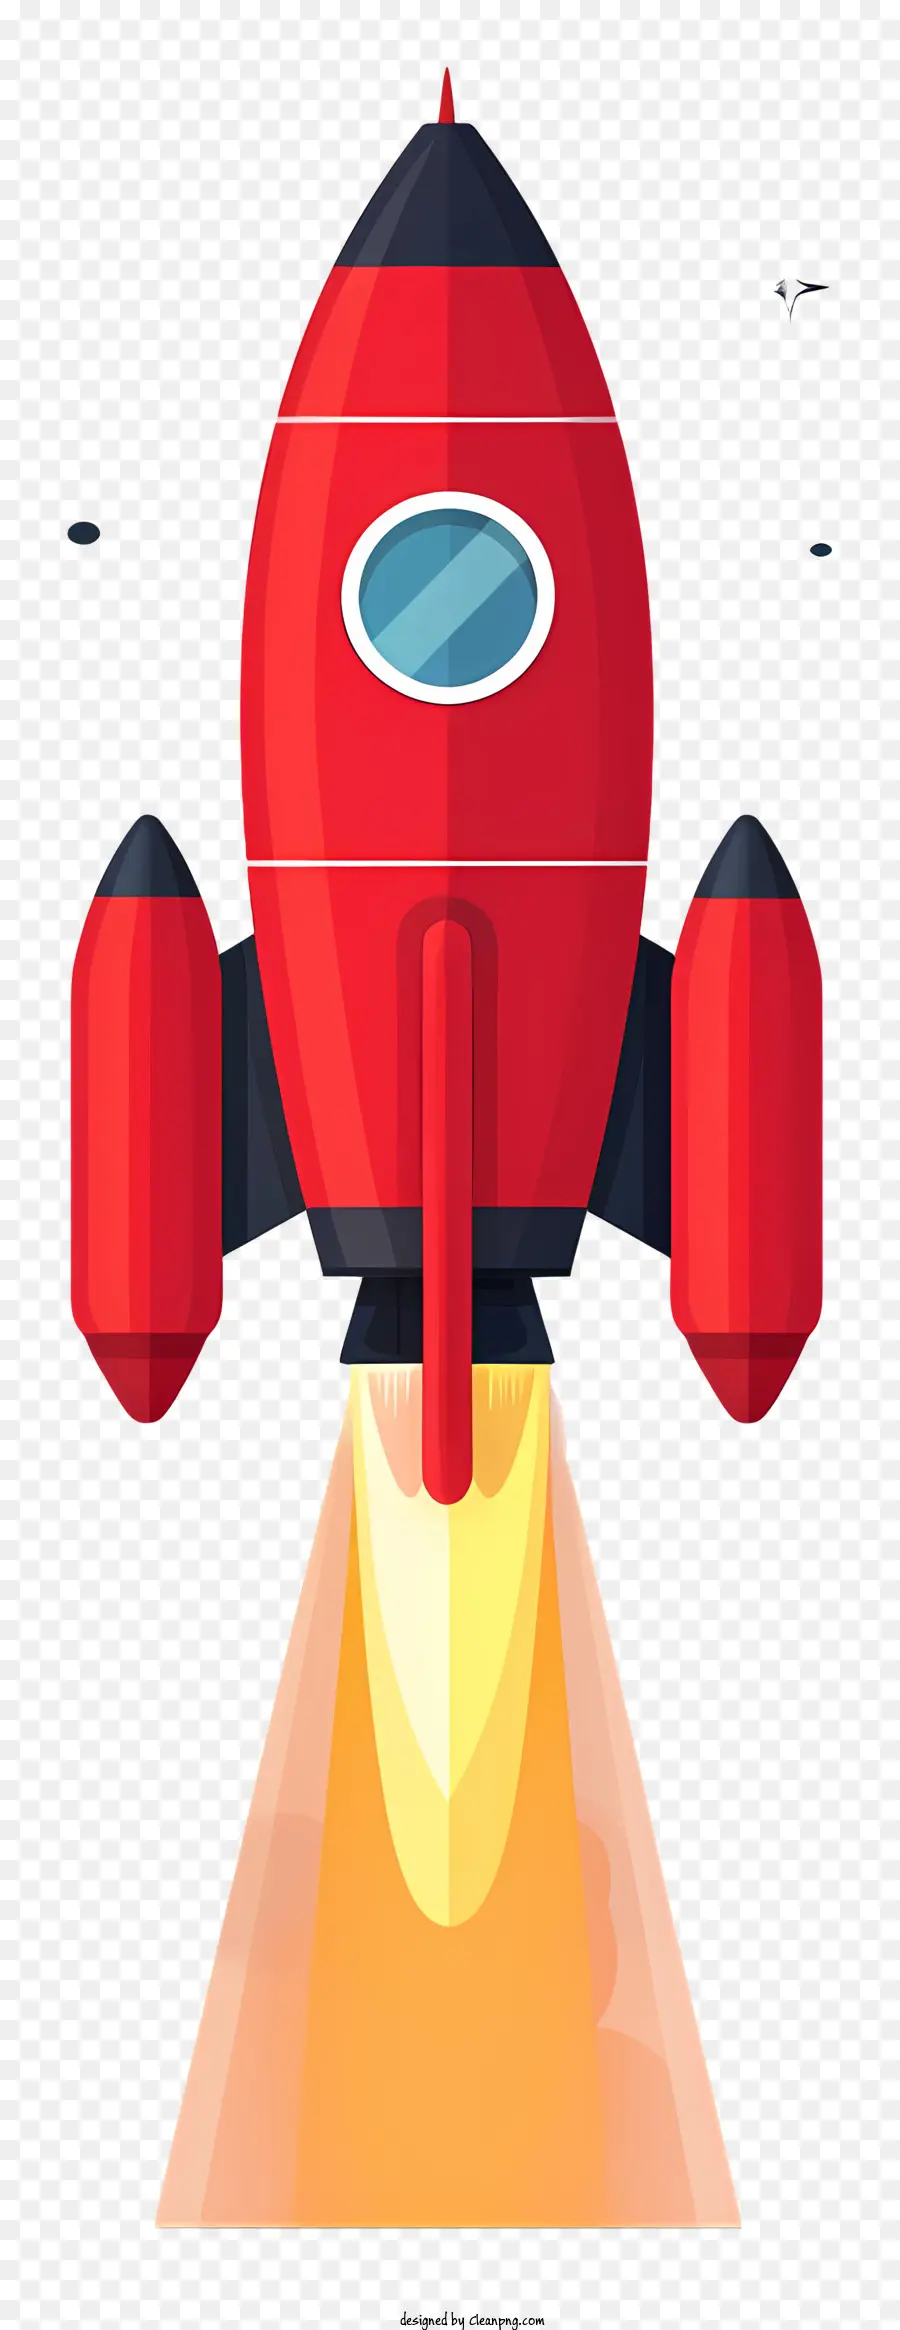 L'astronauta - Rocket rosso che vola con fiamme nere